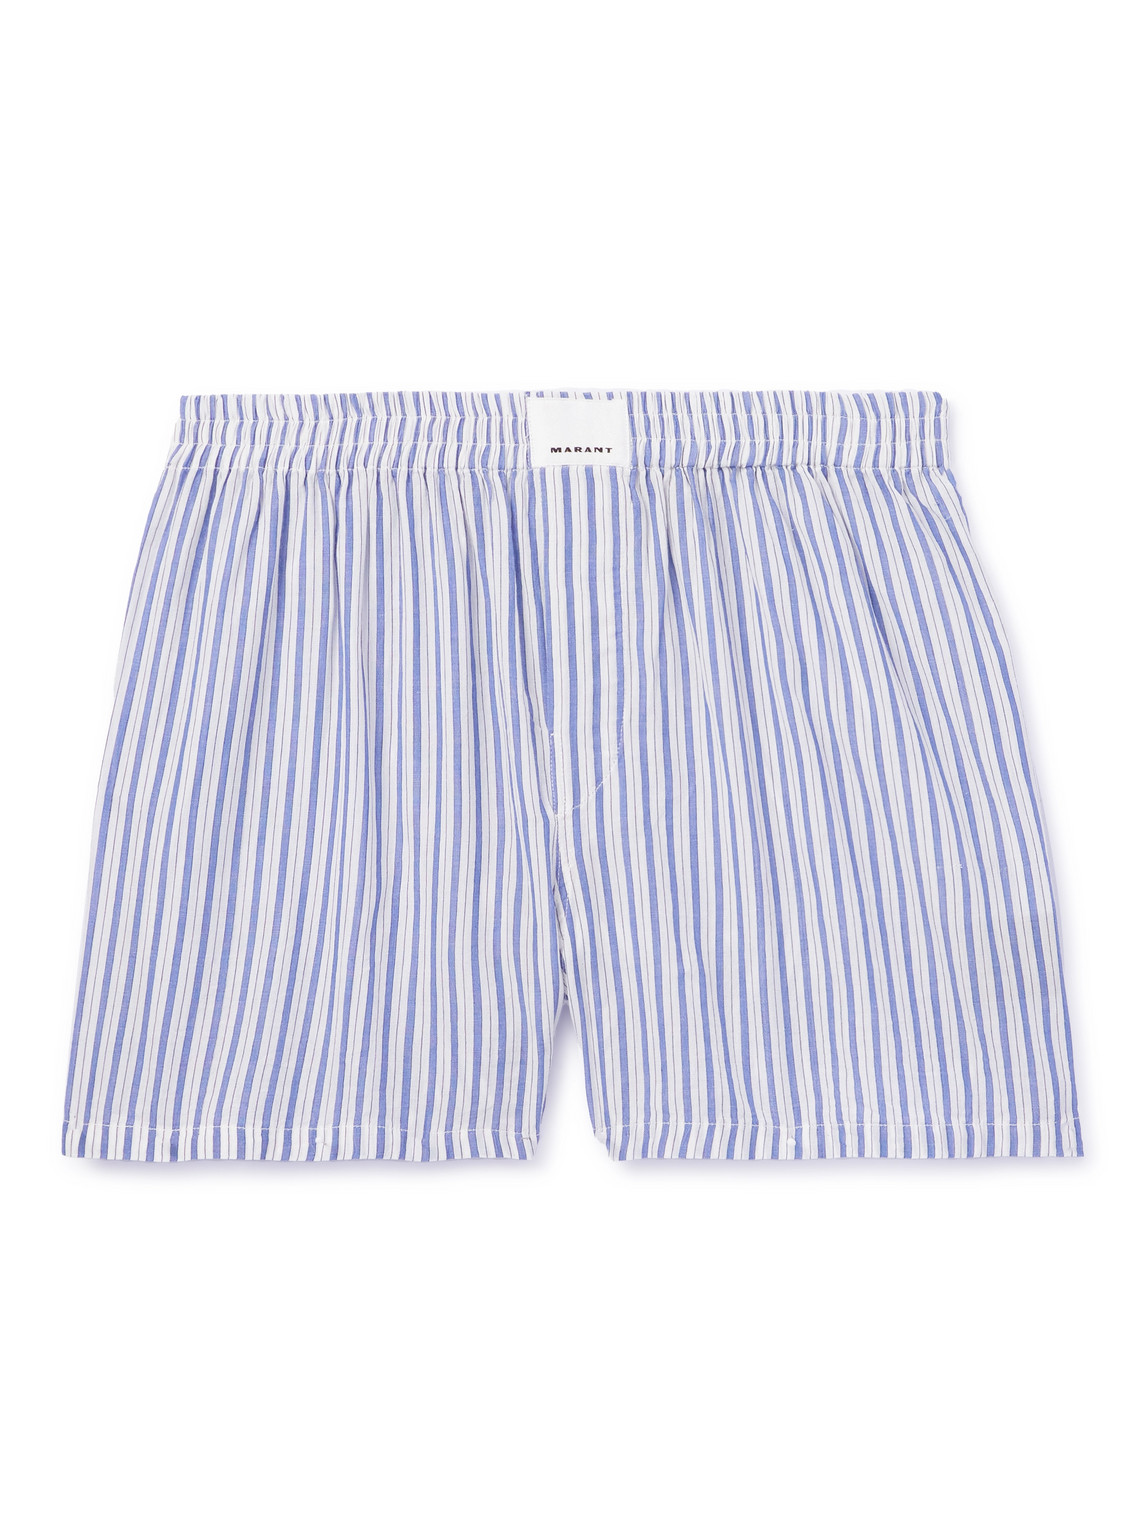 Marant Barny Striped Boxer Shorts In Blue